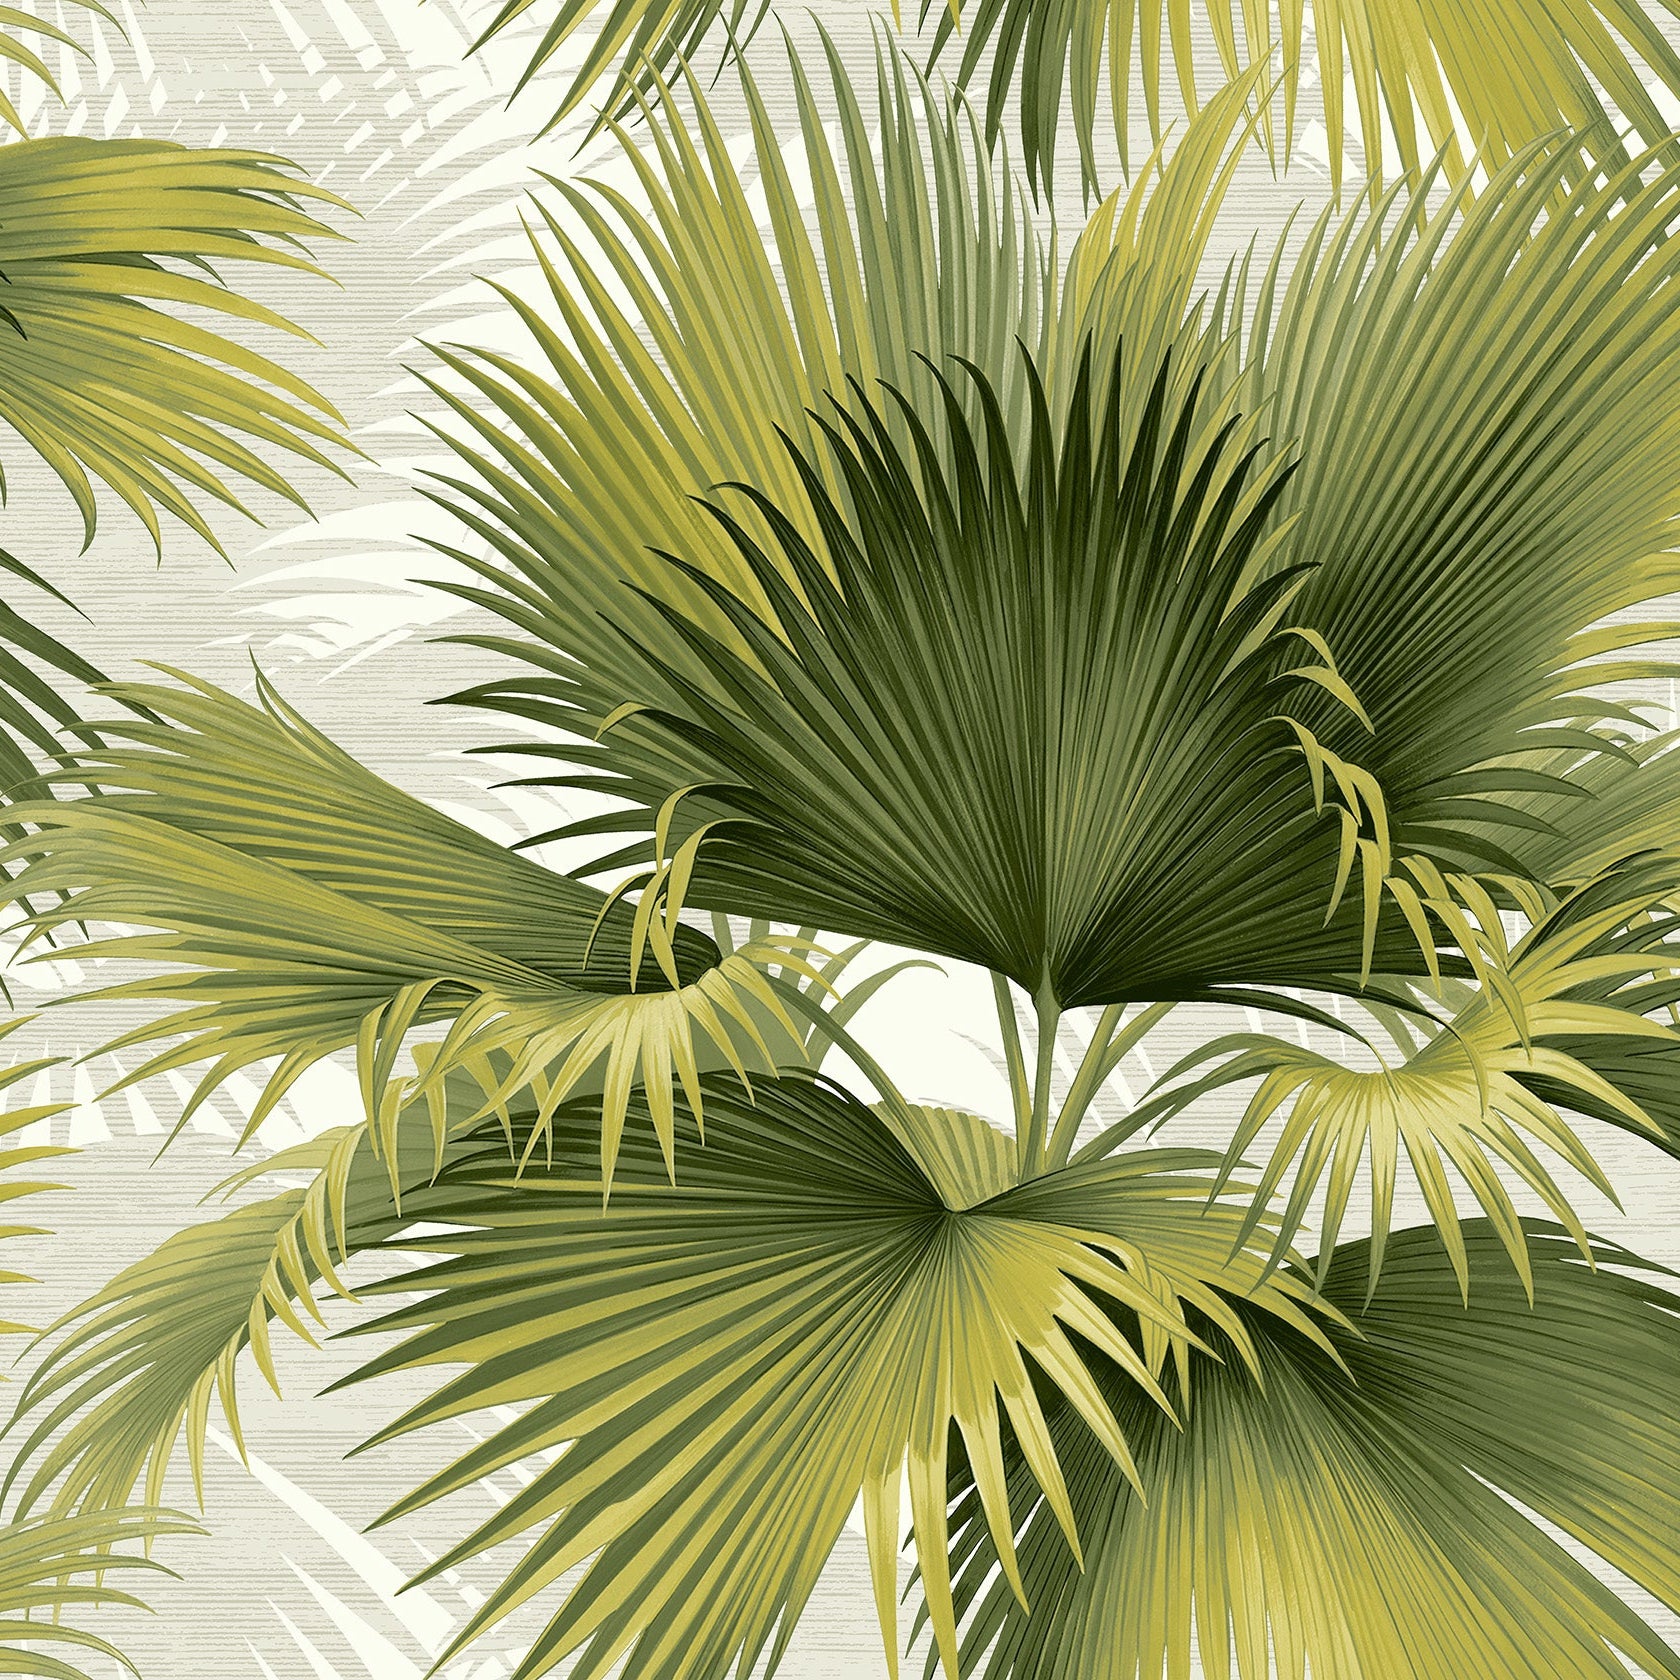 Order 2927-40114 Newport Summer Palm Green Tropical Green A-Street Prints Wallpaper